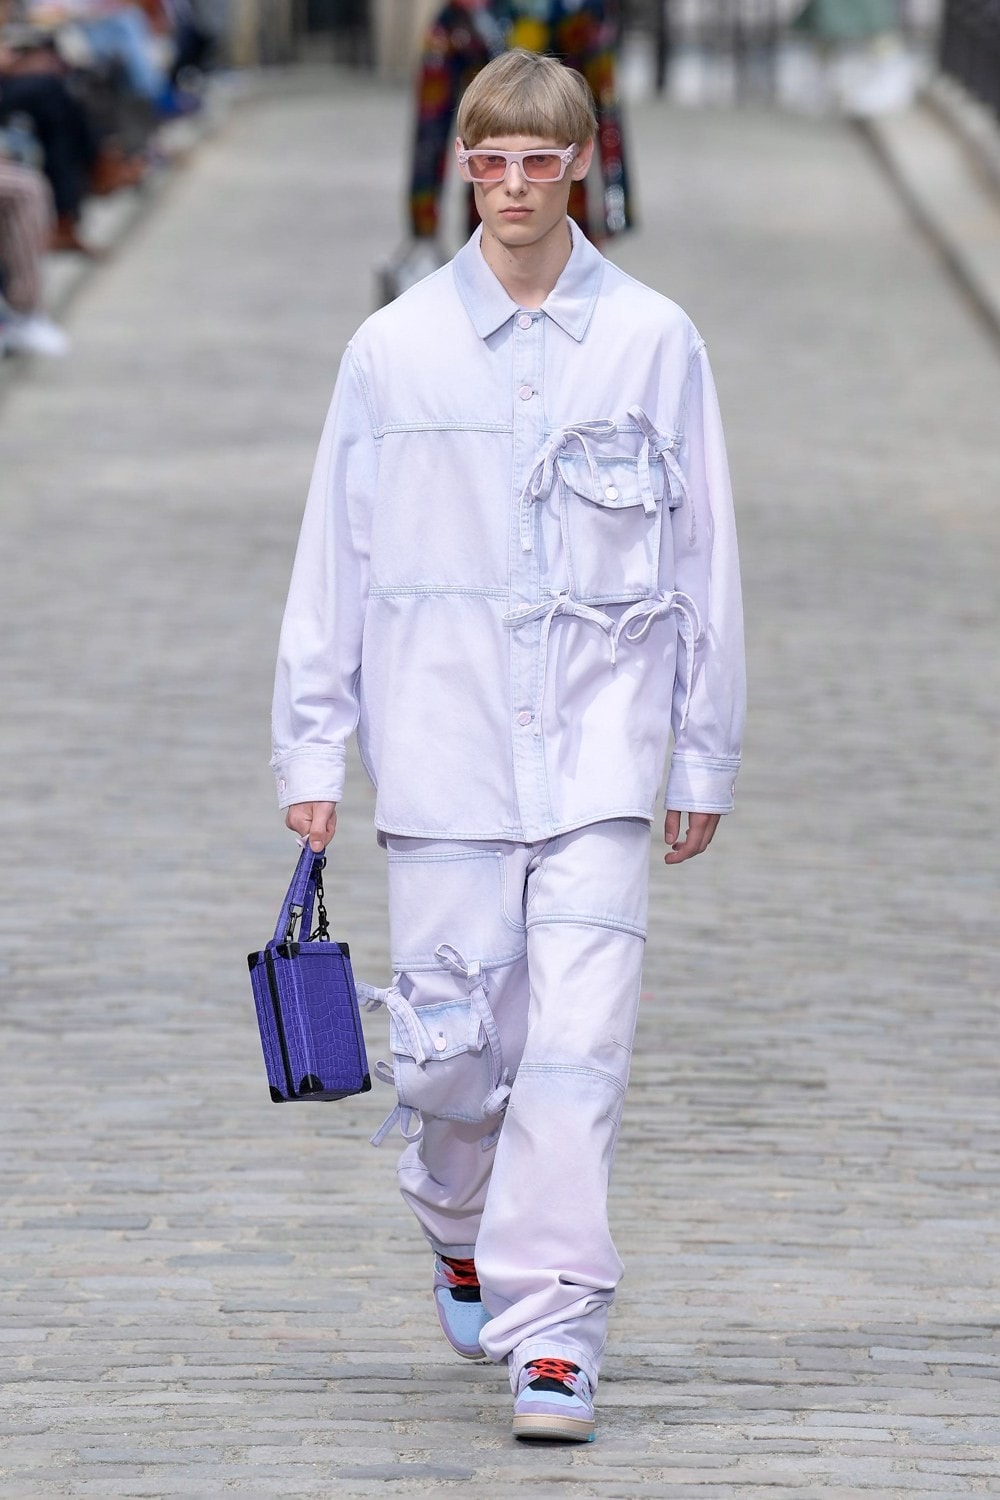 Louis Vuitton Virgil Abloh Spring Summer 2020 Paris Fashion Week Men's Show Collection Raincoat Pants White